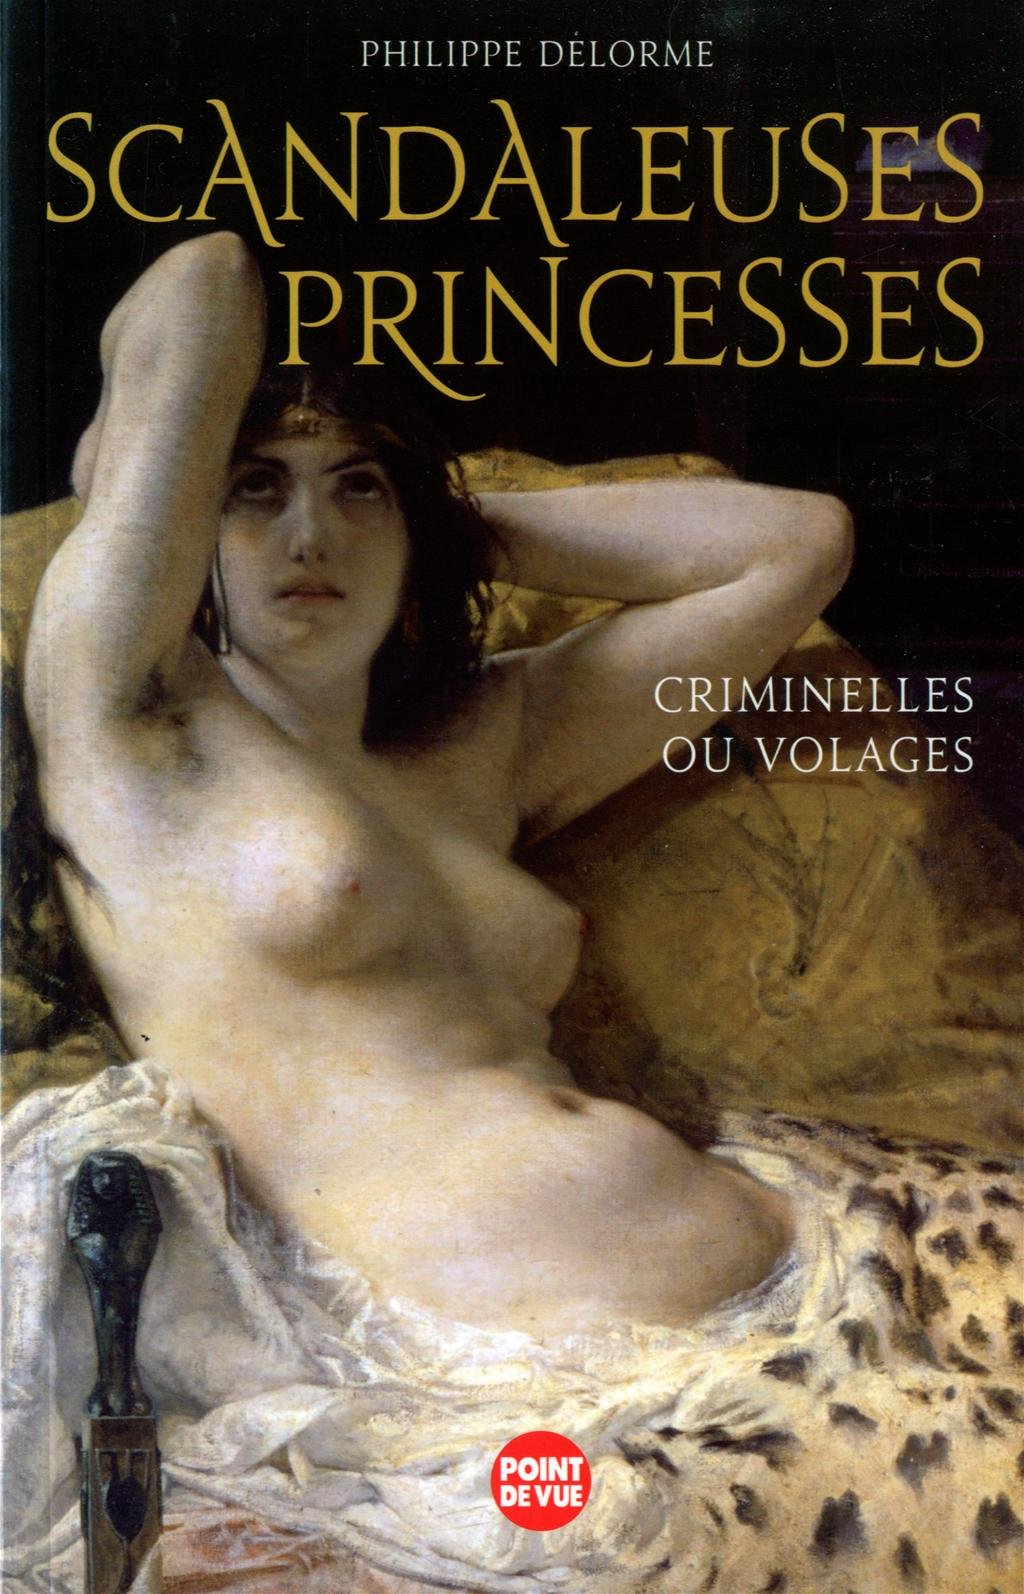 Livre ISBN 2843439051 Point de vue : Scandaleuses princesses (Philippe Delorme)